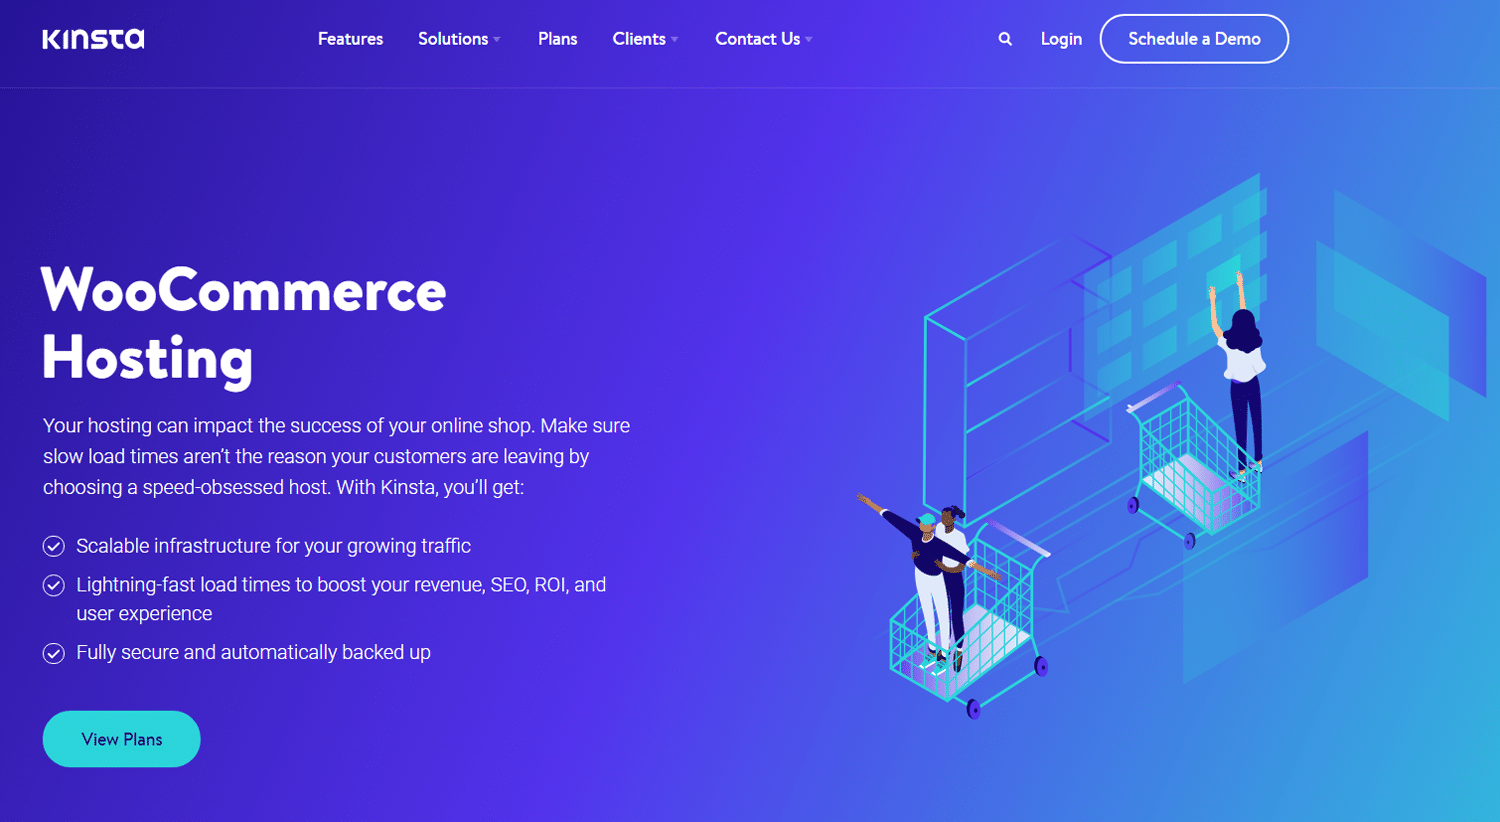 Die WooCommerce-Hosting-Seite von Kinsta mit einer Illustration von Menschen und Einkaufswagen vor einem blauen Hintergrund.